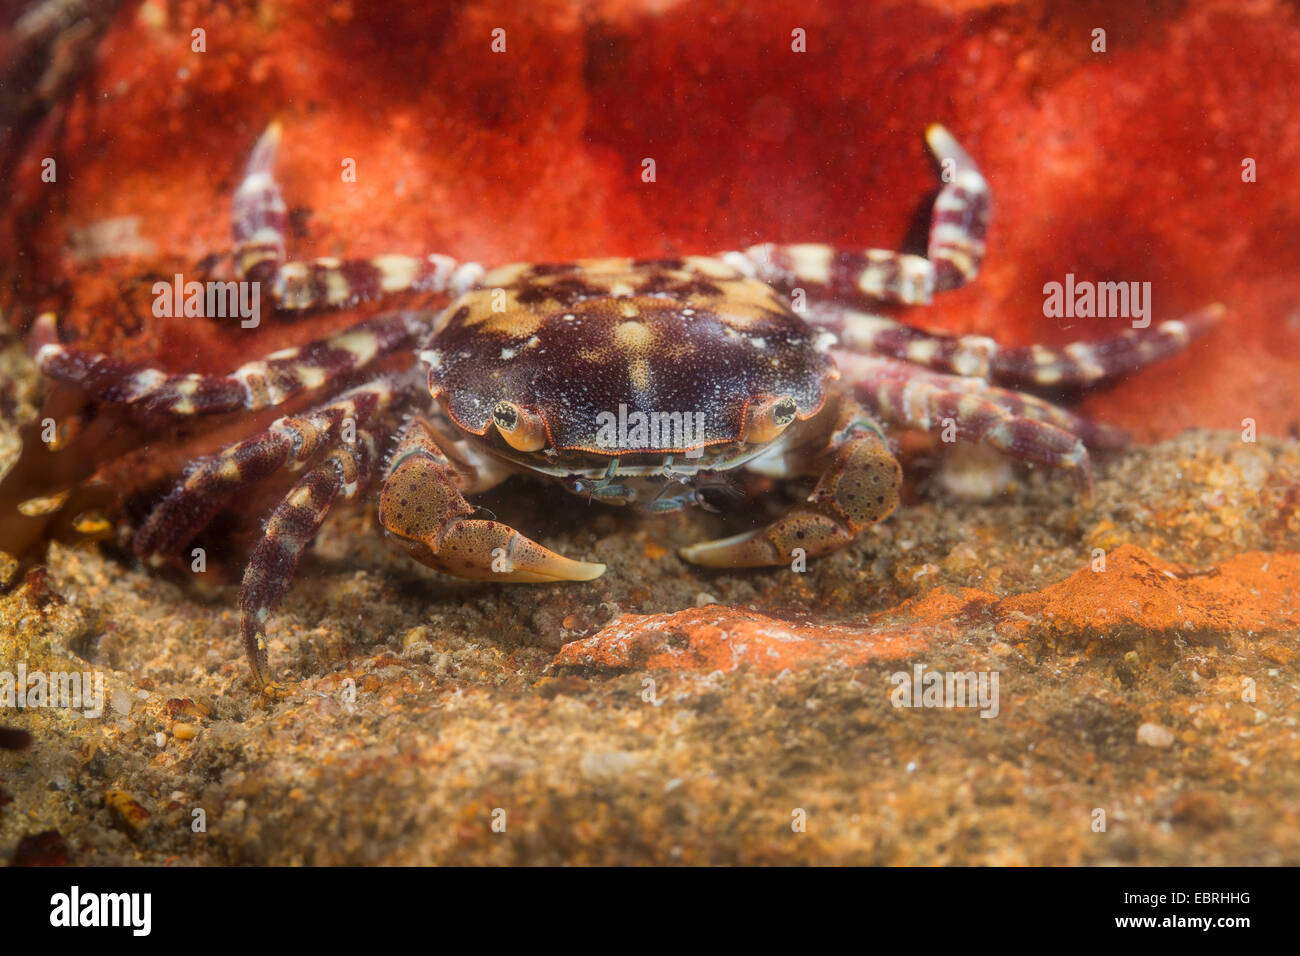 Japanese shore crab, Asian shore crab, Pacific crab (Hemigrapsus sanguineus, Grapsus sanguineus, Heterograpsus maculatus), Germany Stock Photo